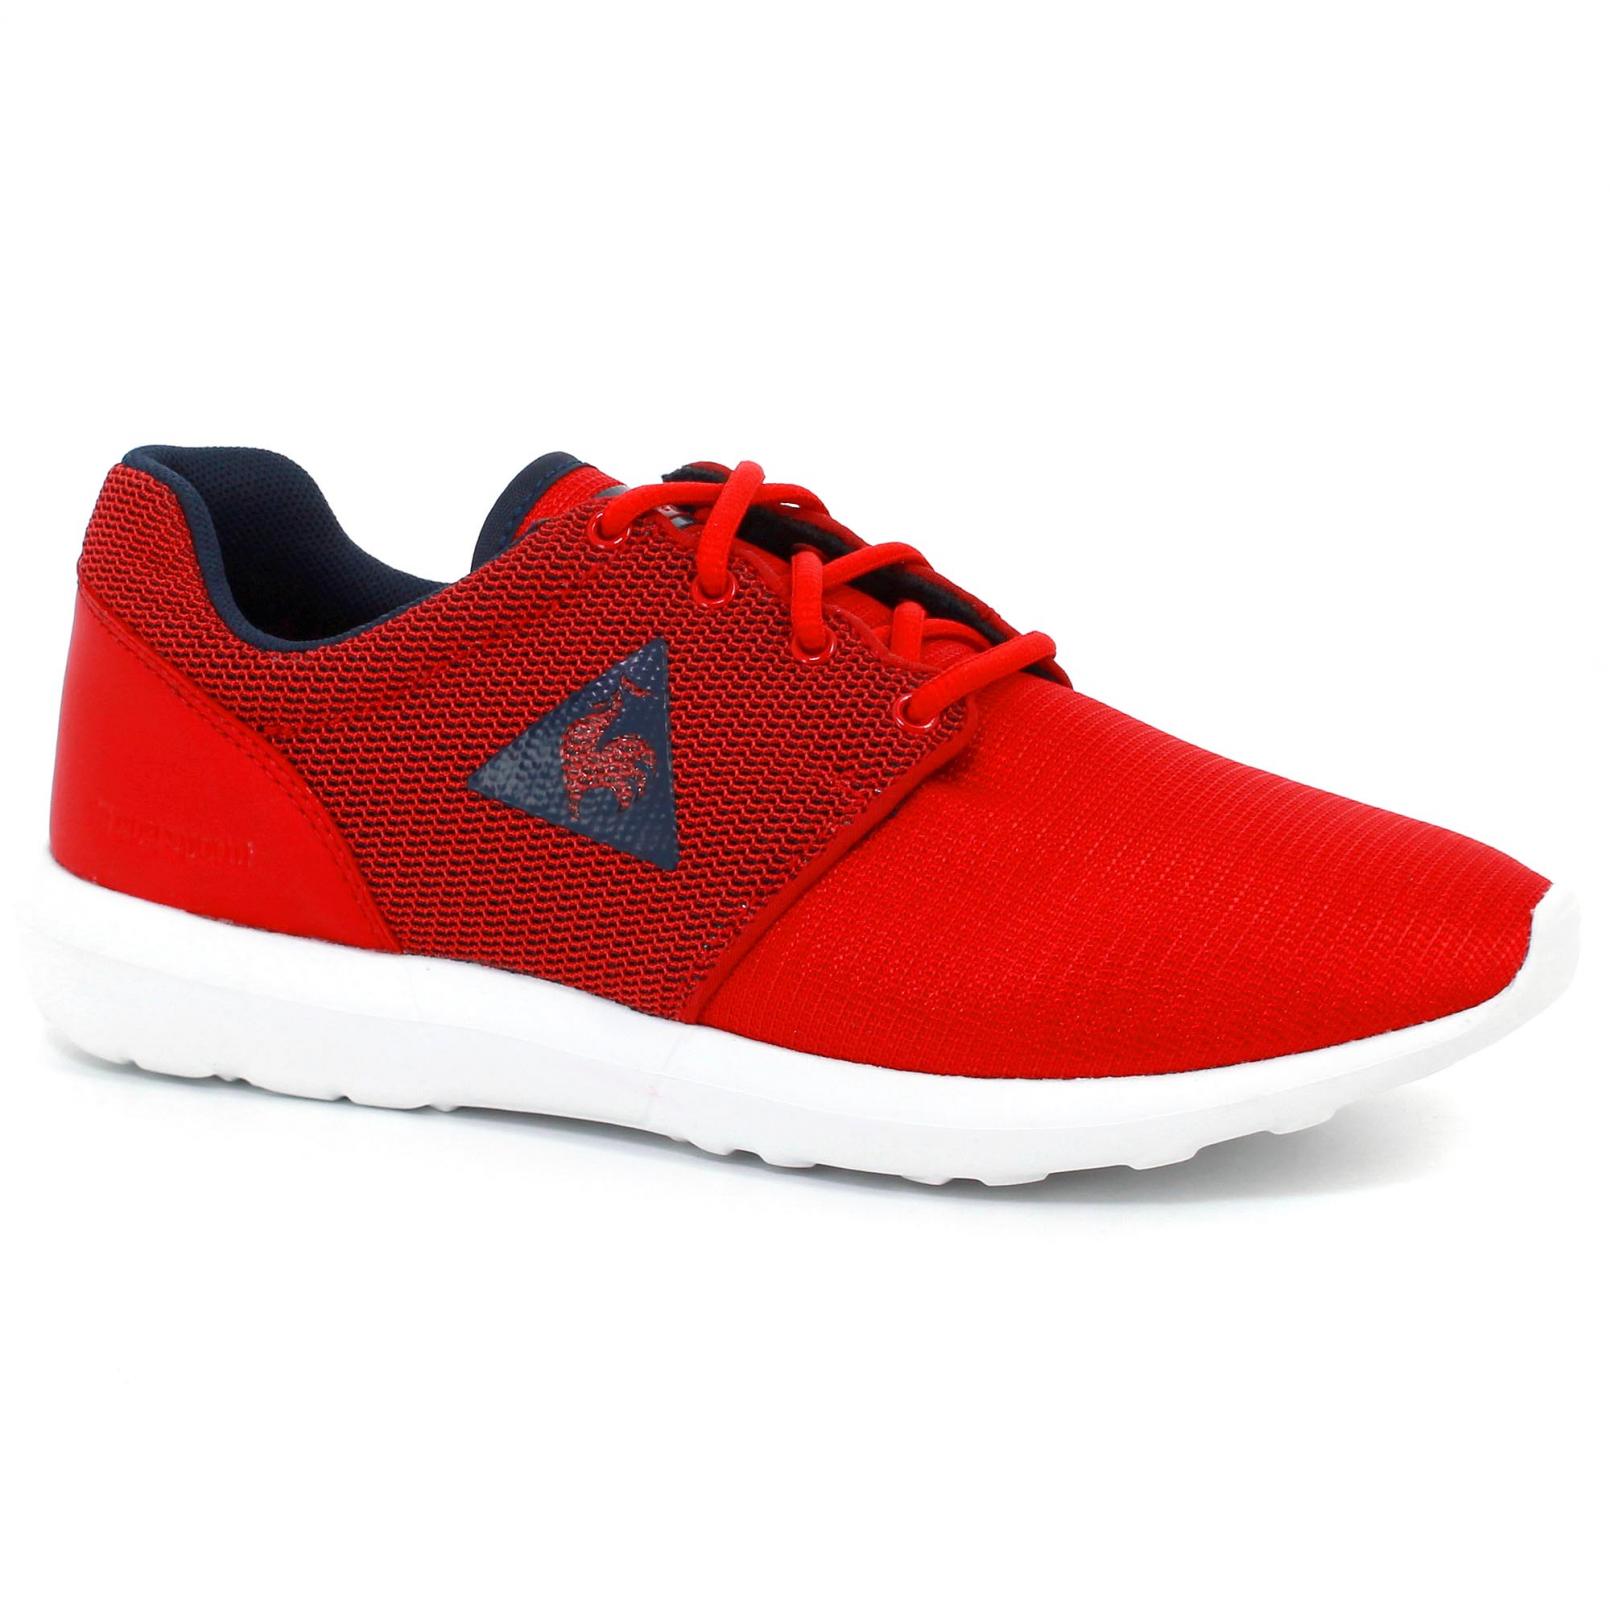 Shoes – Le Coq Sportif Dynacomf Gs 3D Mesh Red/Blue